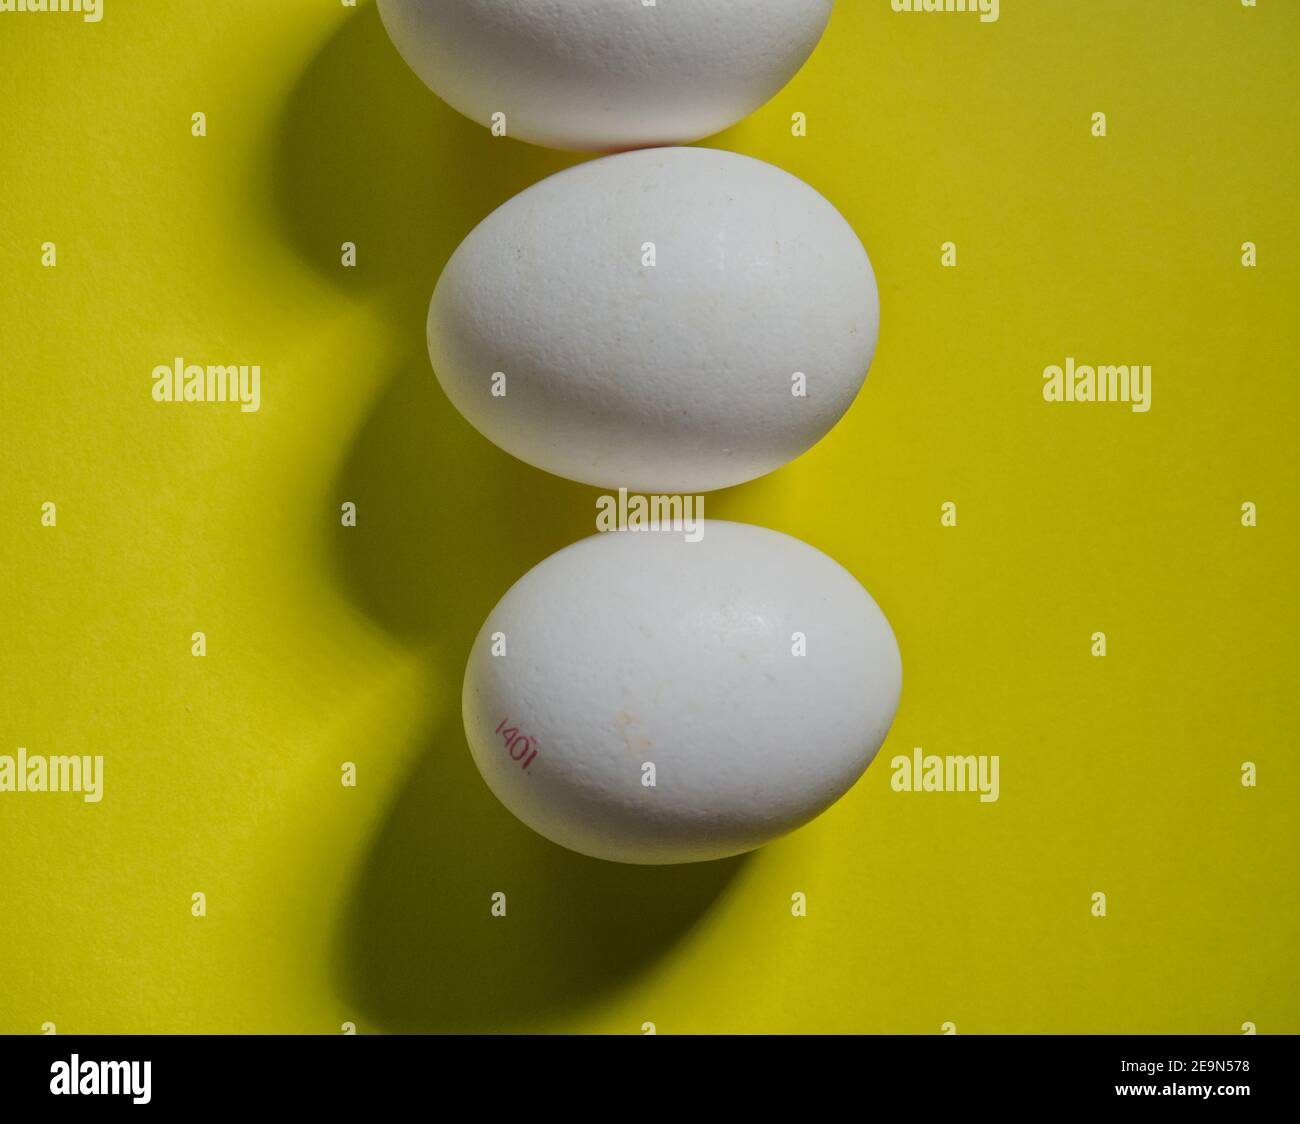 Trois œufs bio blancs sur fond jaune, topview Banque D'Images